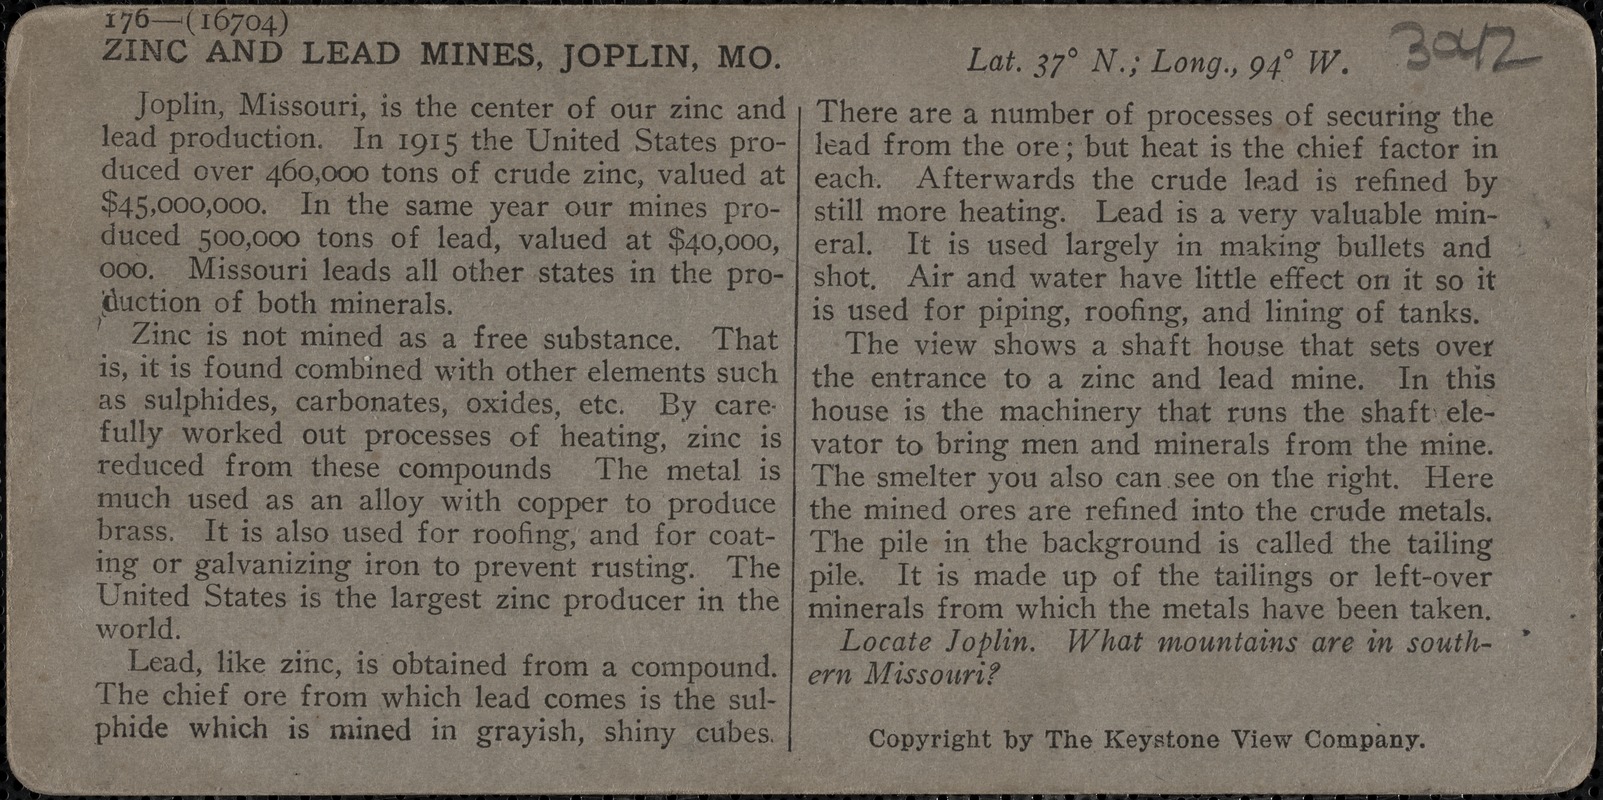 Zinc and lead mines, Joplin, Mo.